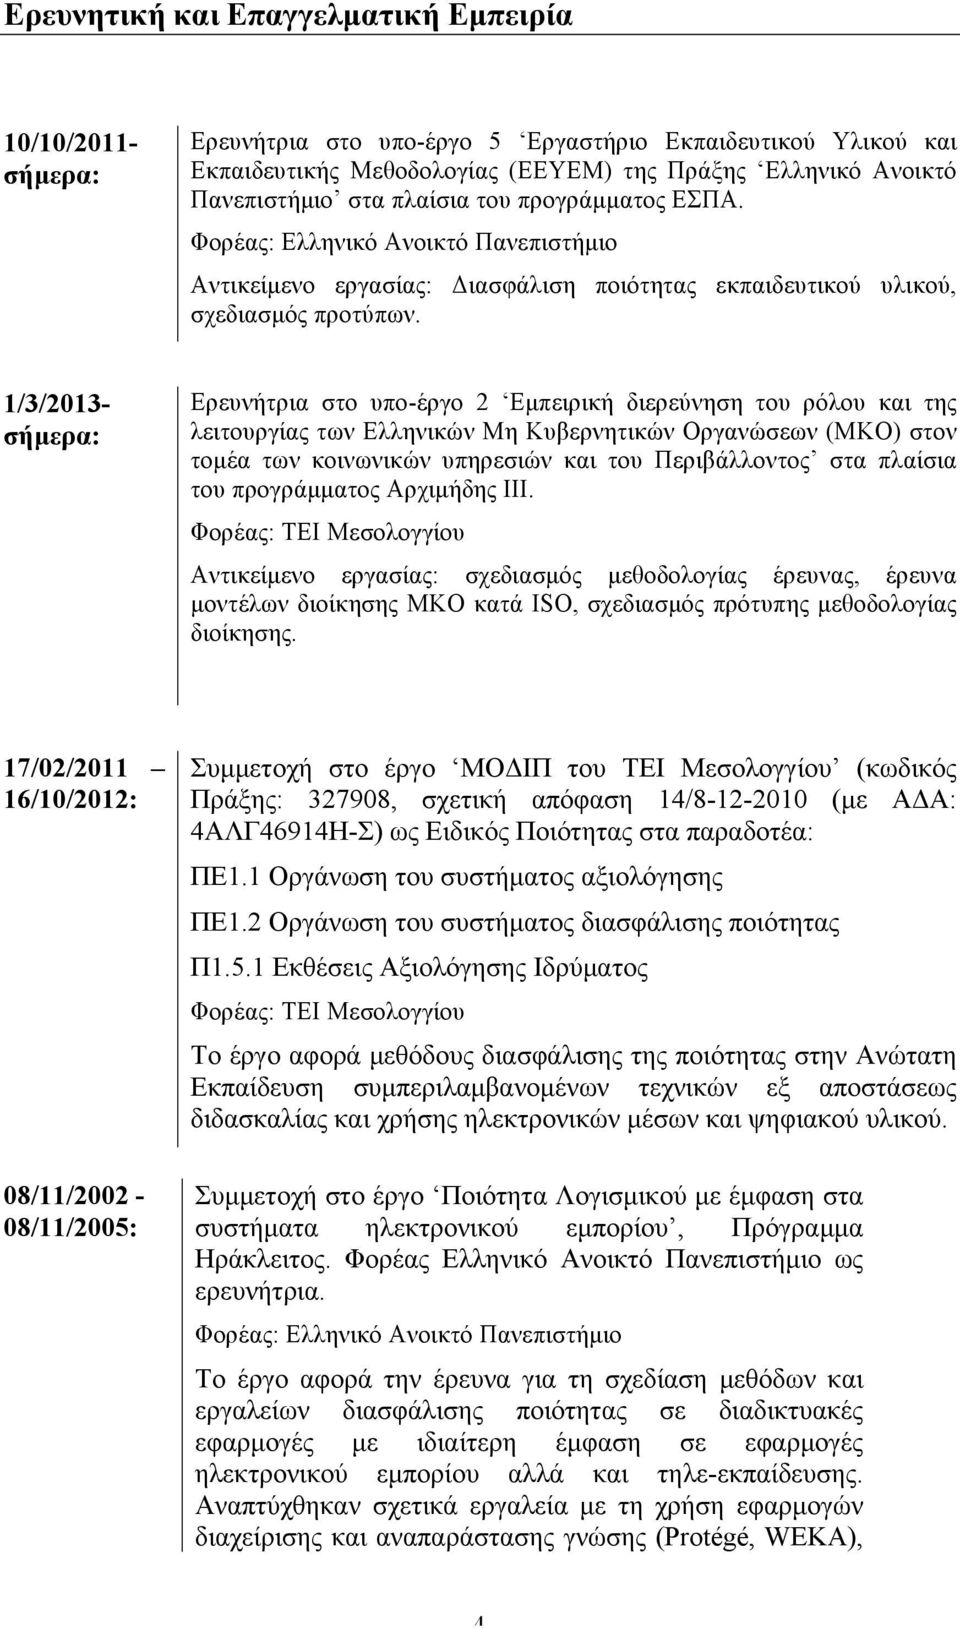 1/3/2013- σήµερα: Ερευνήτρια στο υπο-έργο 2 Εµπειρική διερεύνηση του ρόλου και της λειτουργίας των Ελληνικών Μη Κυβερνητικών Οργανώσεων (ΜΚΟ) στον τοµέα των κοινωνικών υπηρεσιών και του Περιβάλλοντος